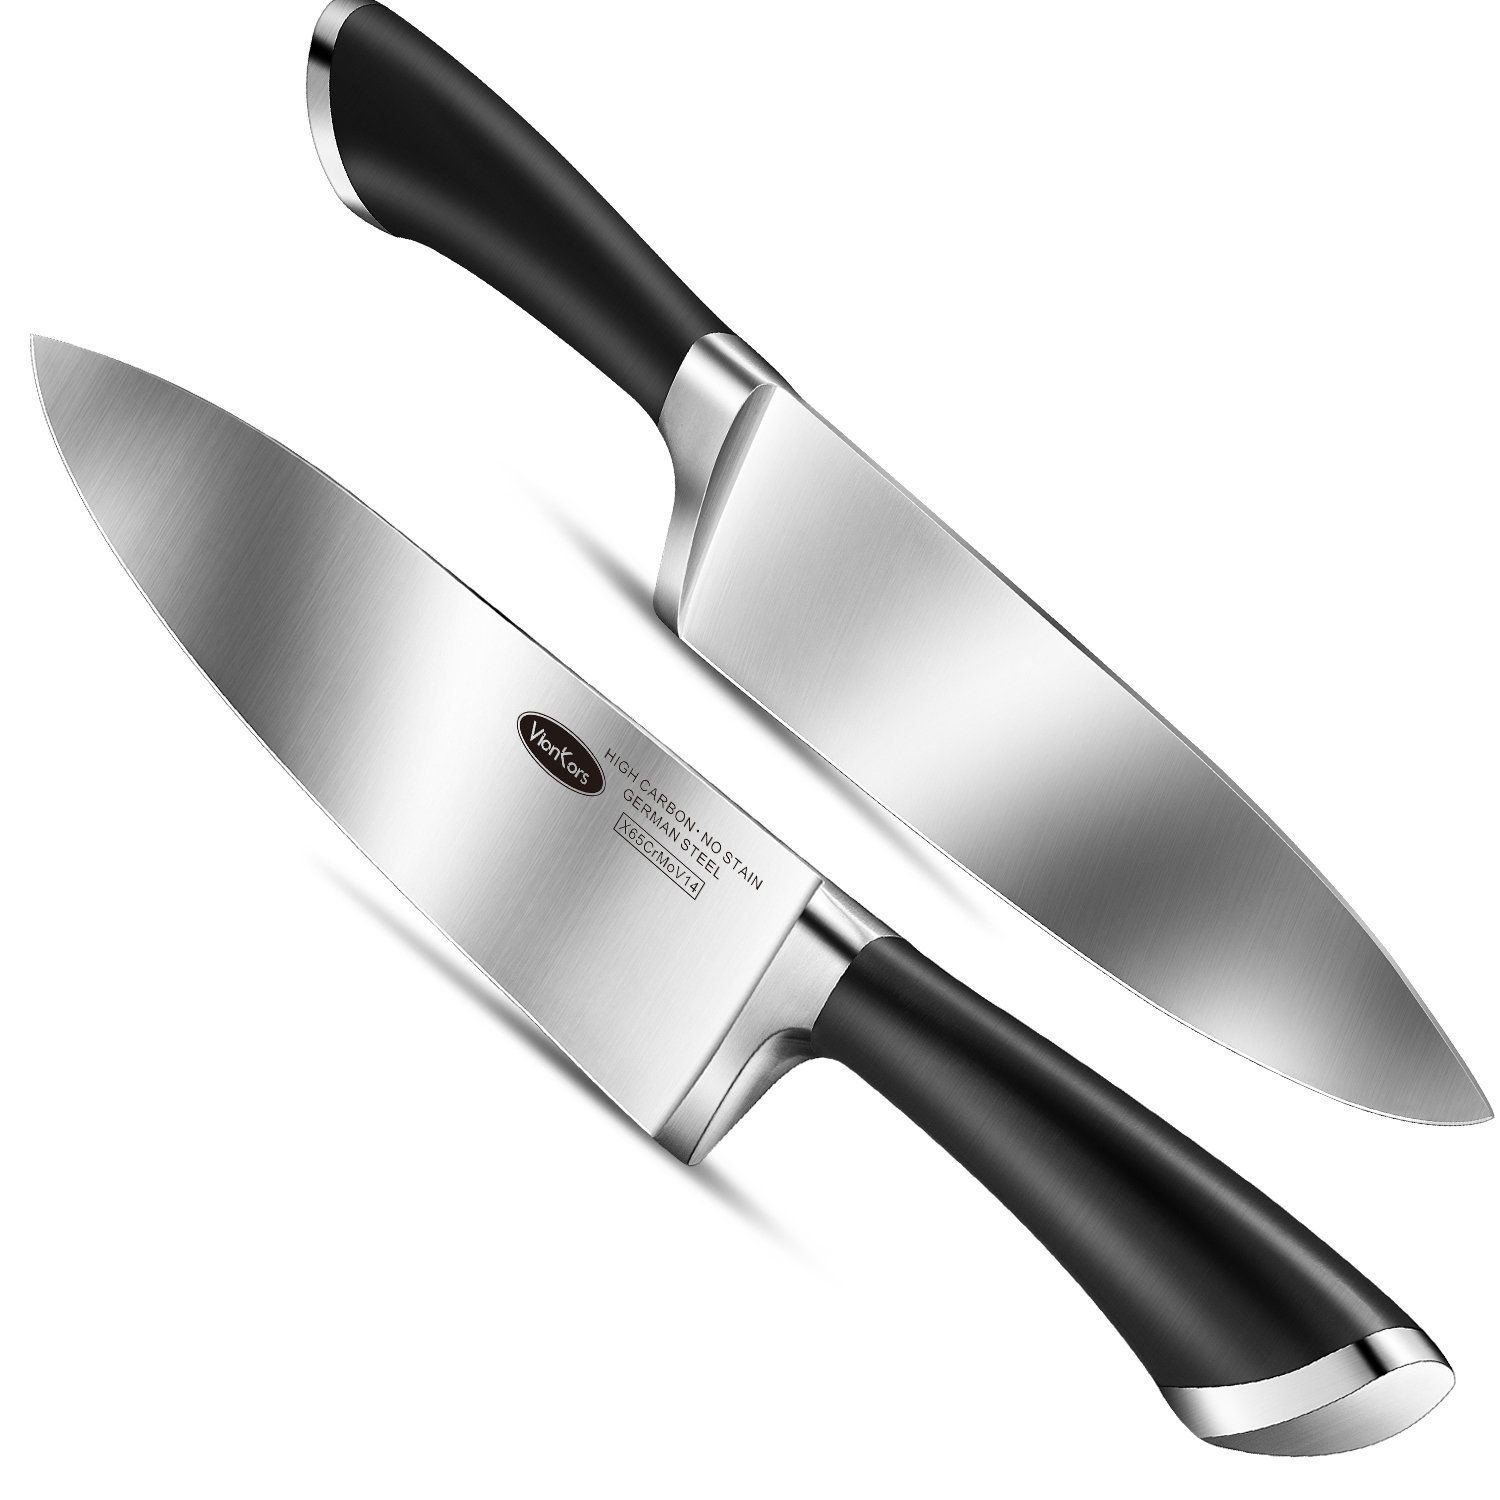 Купить ножи chef. Кухонный нож. Широкий кухонный нож. Нож кухонный "шеф".. Нажми куханые.